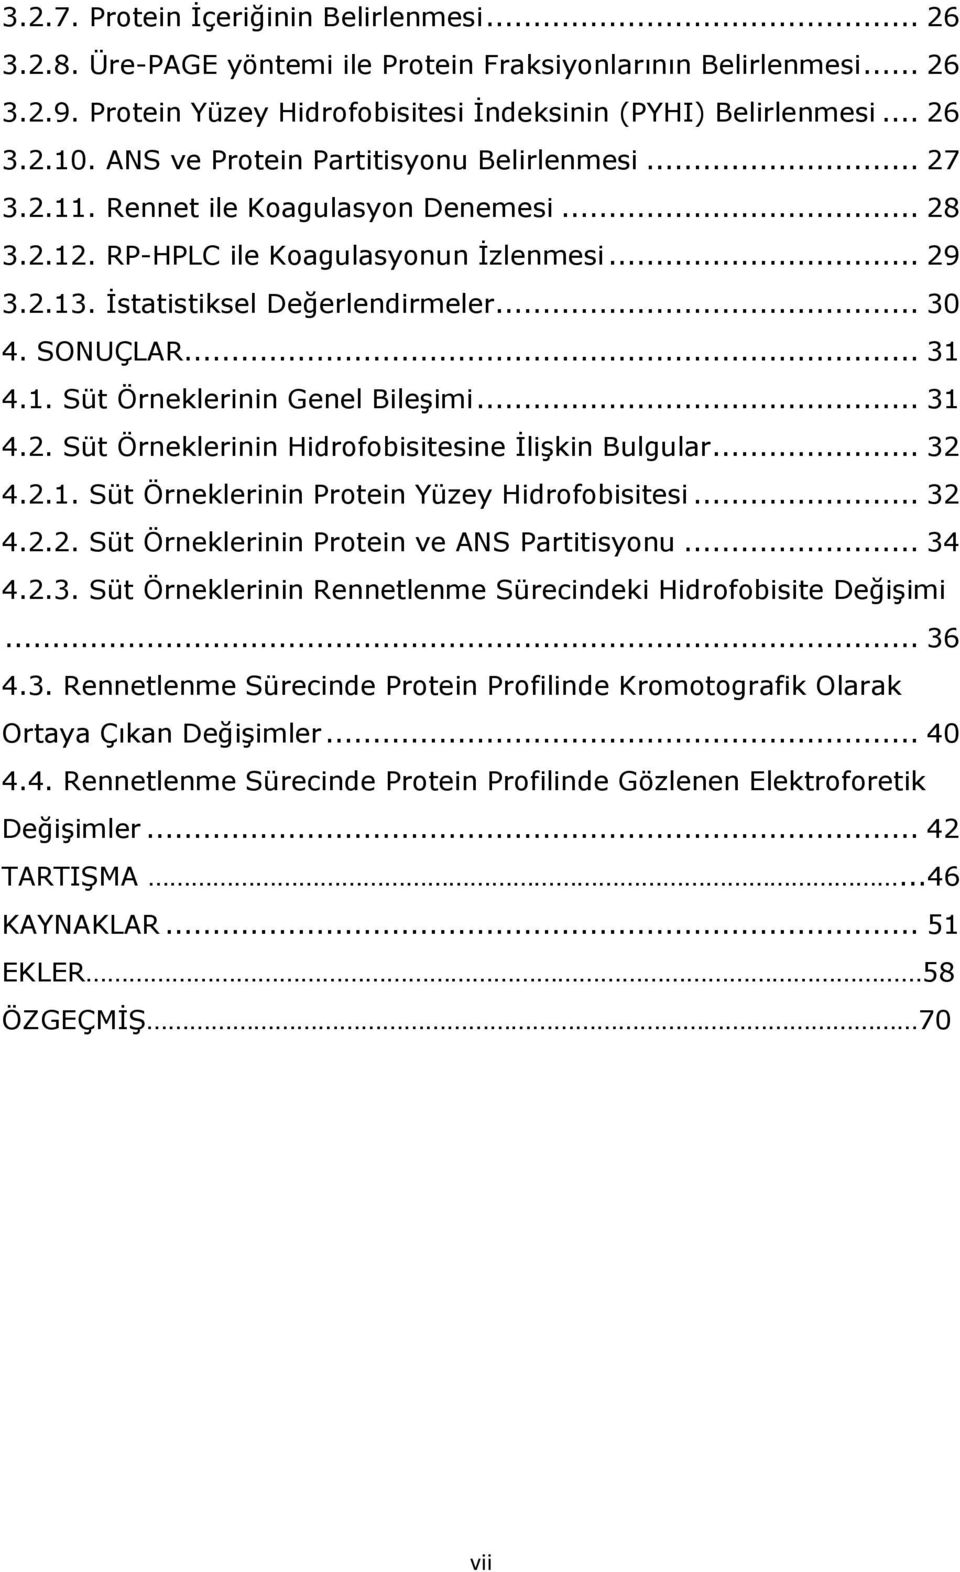 .. 31 4.1. Süt Örneklerinin Genel Bileşimi... 31 4.2. Süt Örneklerinin Hidrofobisitesine İlişkin Bulgular... 32 4.2.1. Süt Örneklerinin Protein Yüzey Hidrofobisitesi... 32 4.2.2. Süt Örneklerinin Protein ve ANS Partitisyonu.